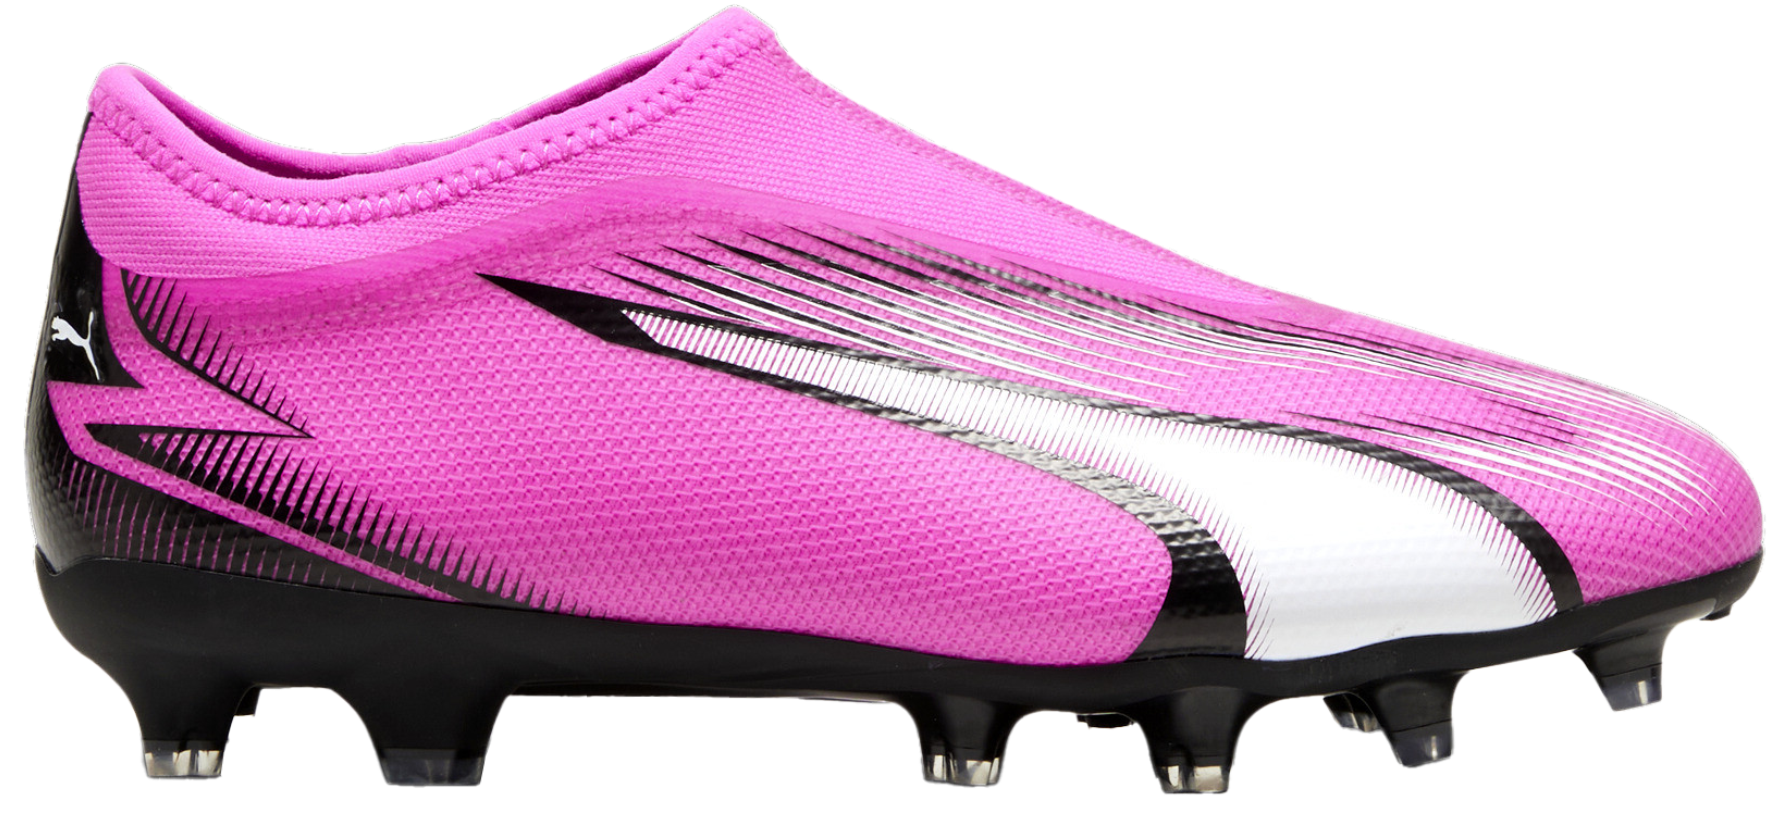 Ποδοσφαιρικά παπούτσια Puma ULTRA MATCH LL FG/AG Jr